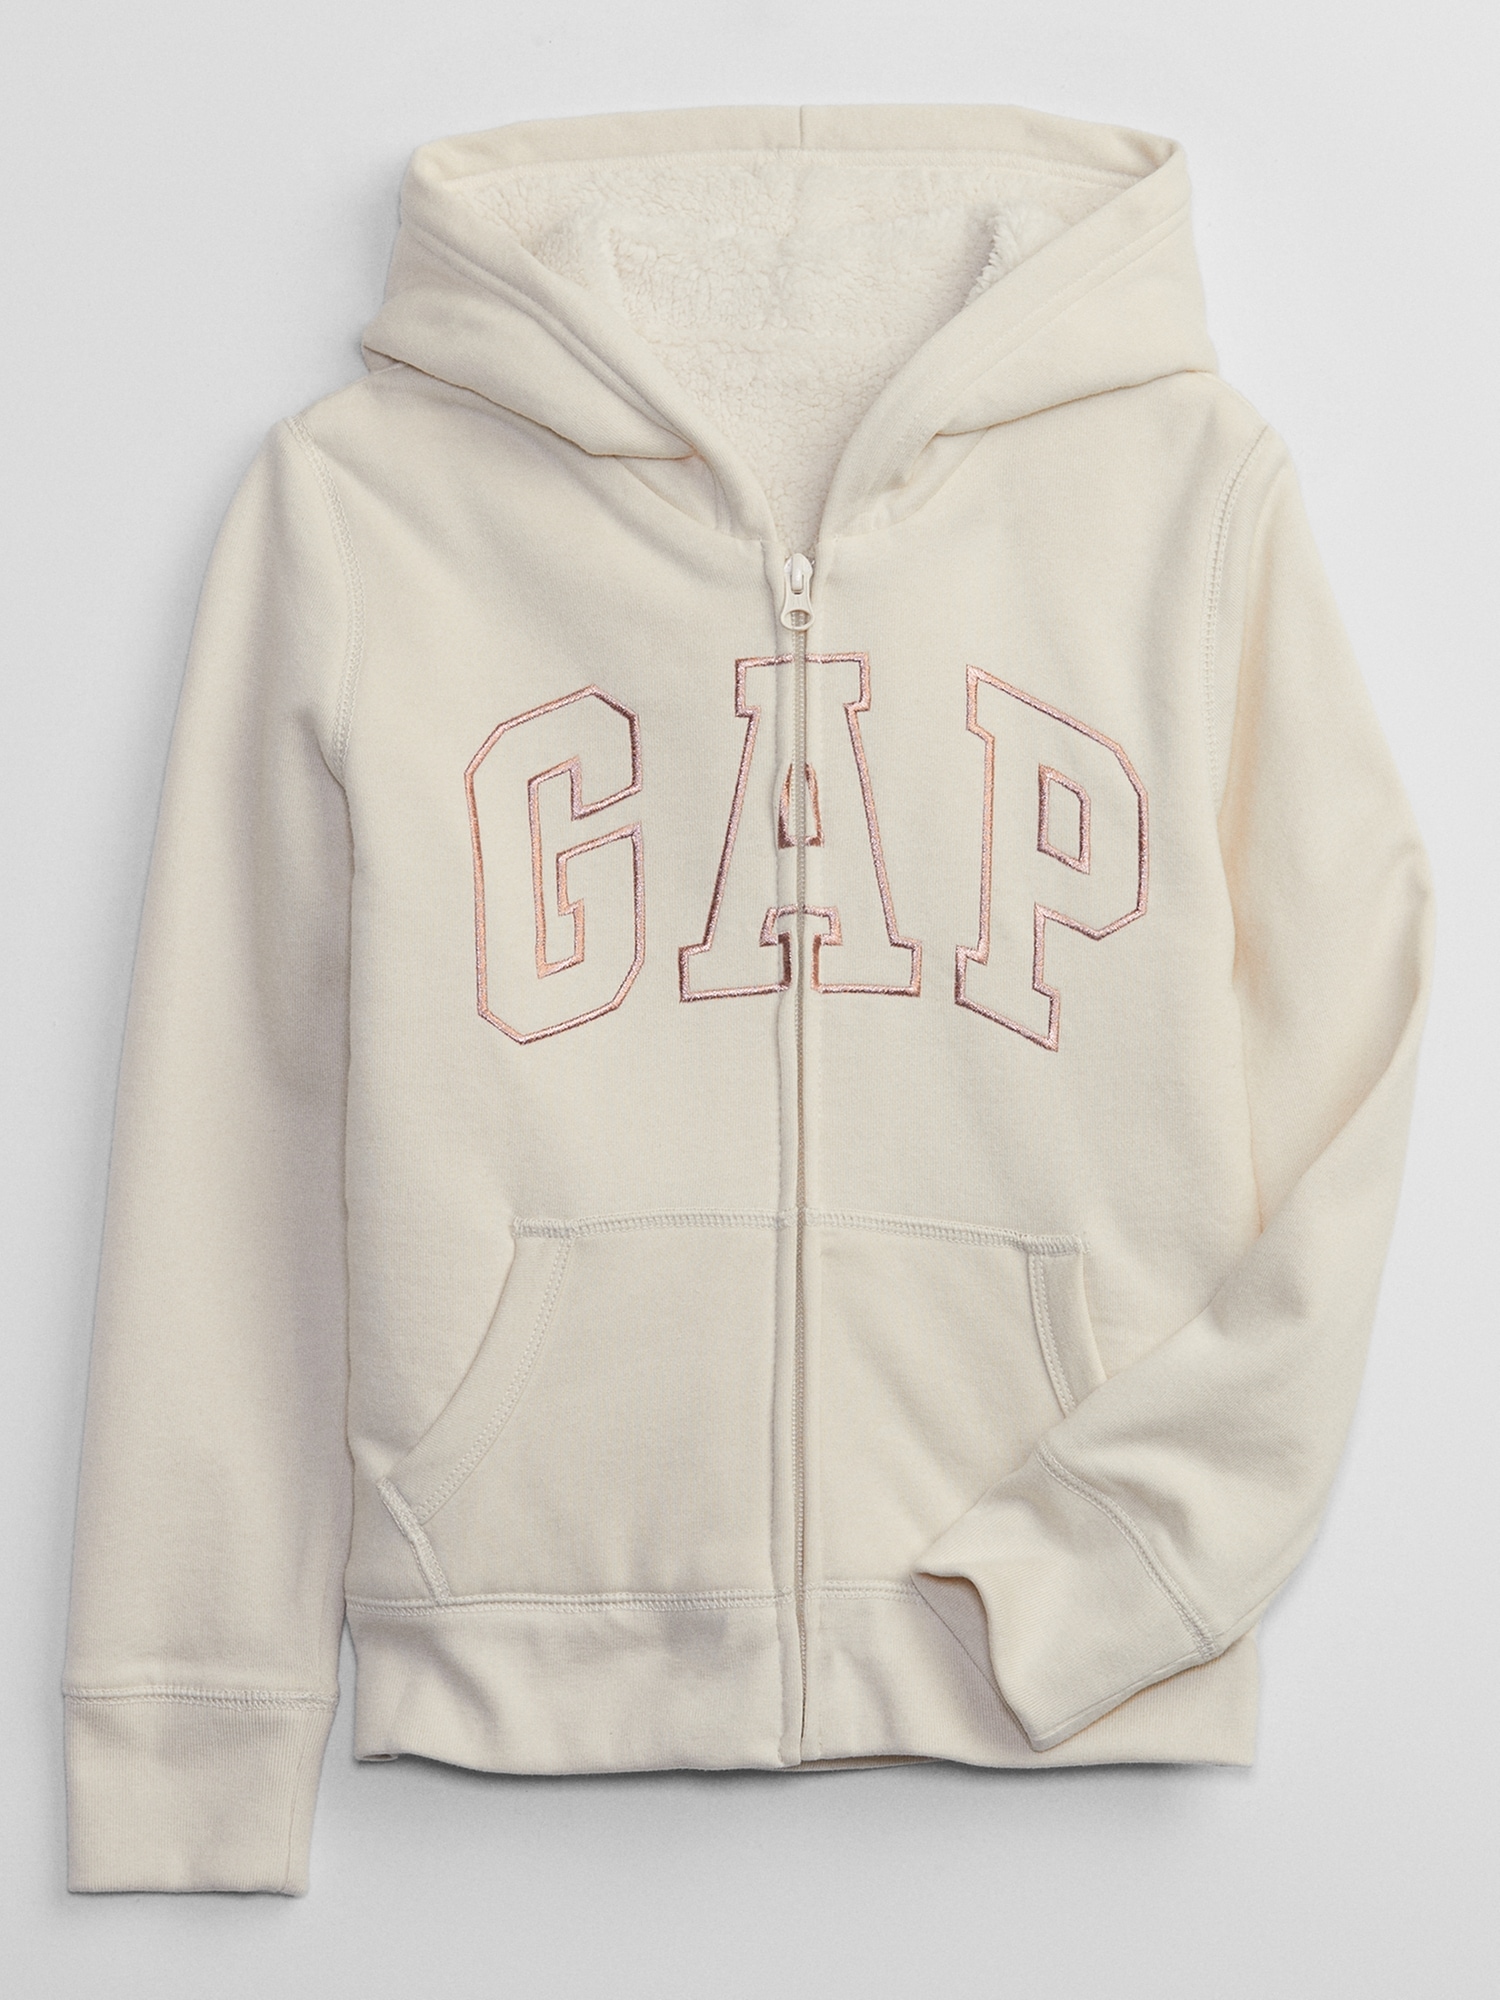 Kids Gap Logo Sherpa Zip Hoodie | Gap Factory